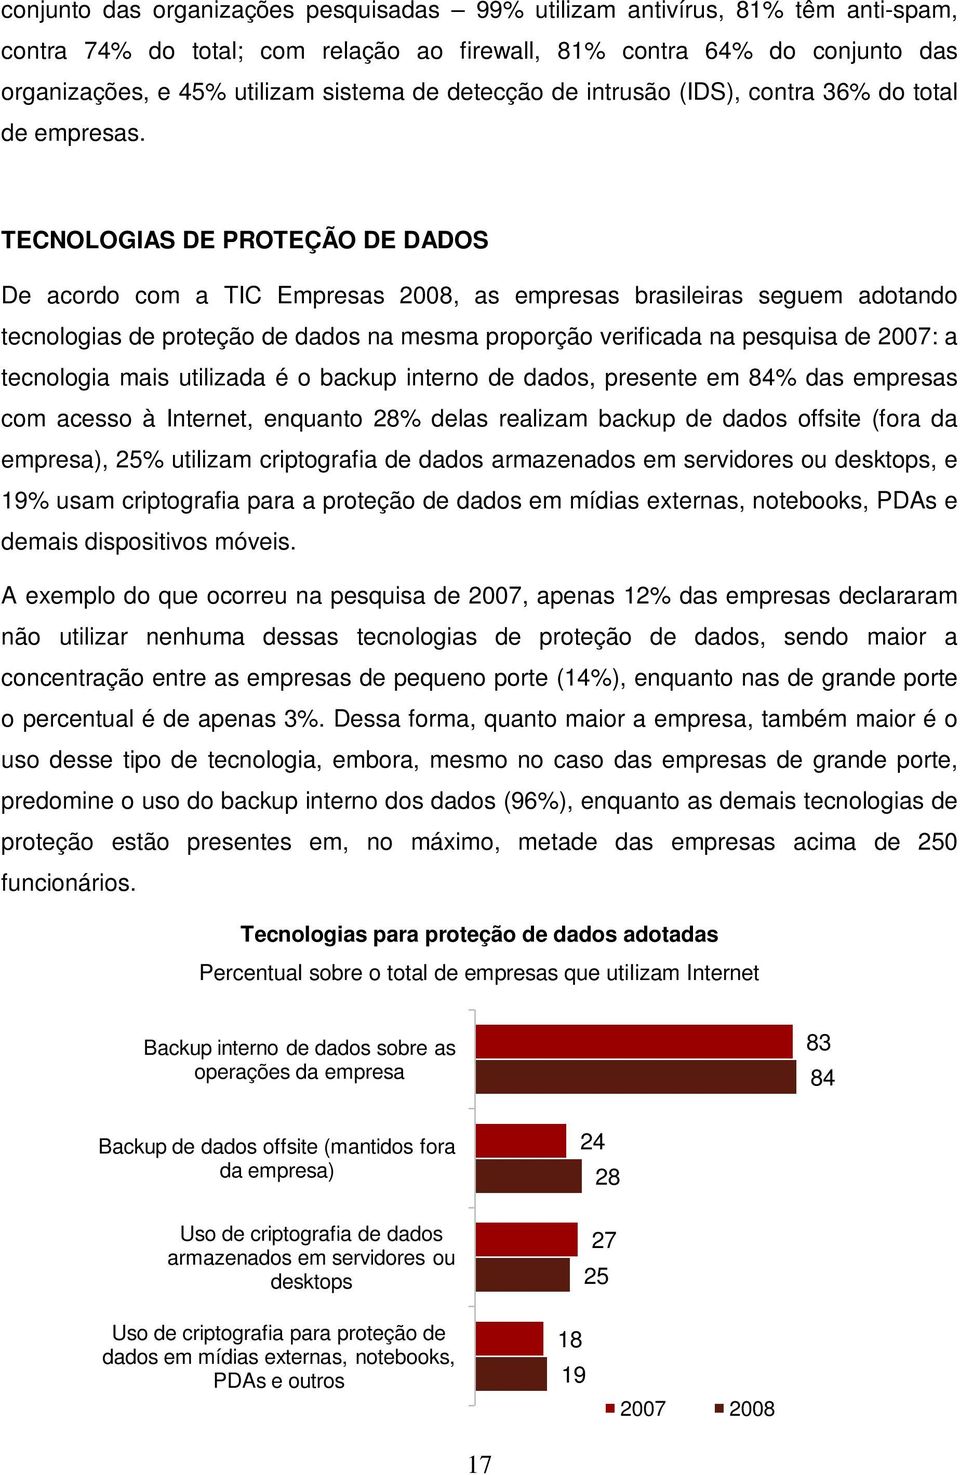 TECNOLOGIAS DE PROTEÇÃO DE DADOS De acordo com a TIC Empresas 2008, as empresas brasileiras seguem adotando tecnologias de proteção de dados na mesma proporção verificada na pesquisa de 2007: a